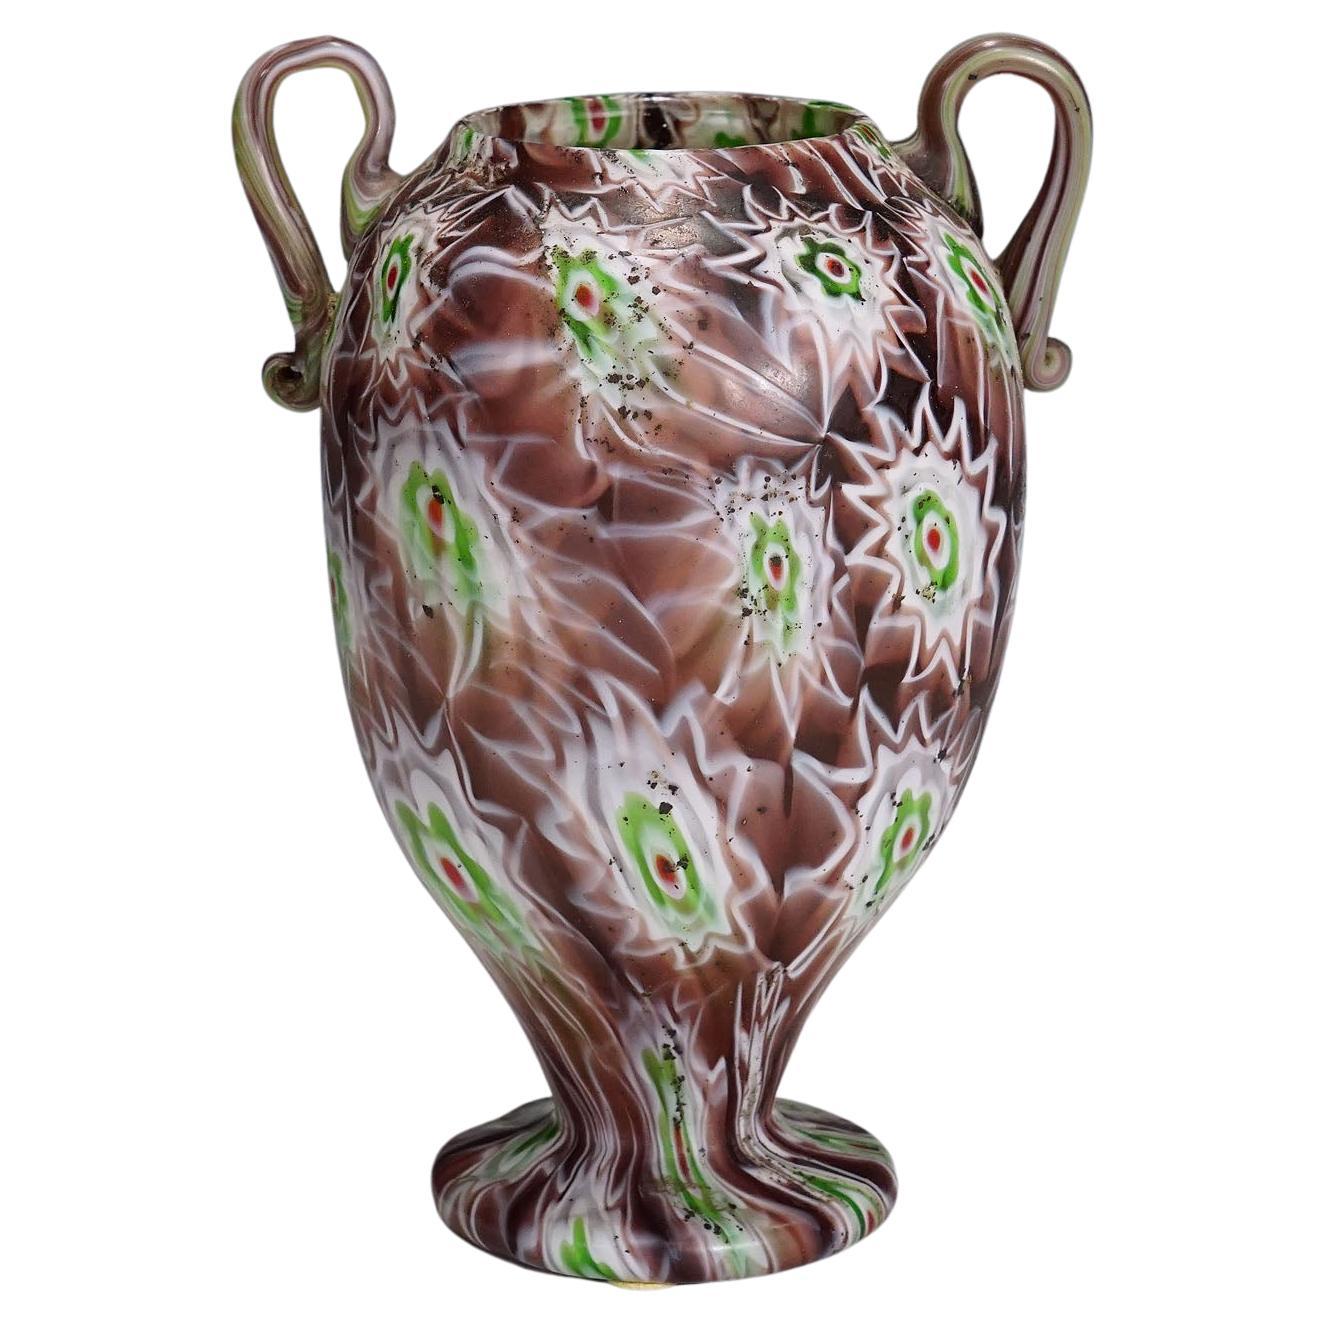 Antike Millefiori-Vase in Violett, Grün und Weiß, Fratelli Toso Murano 1910